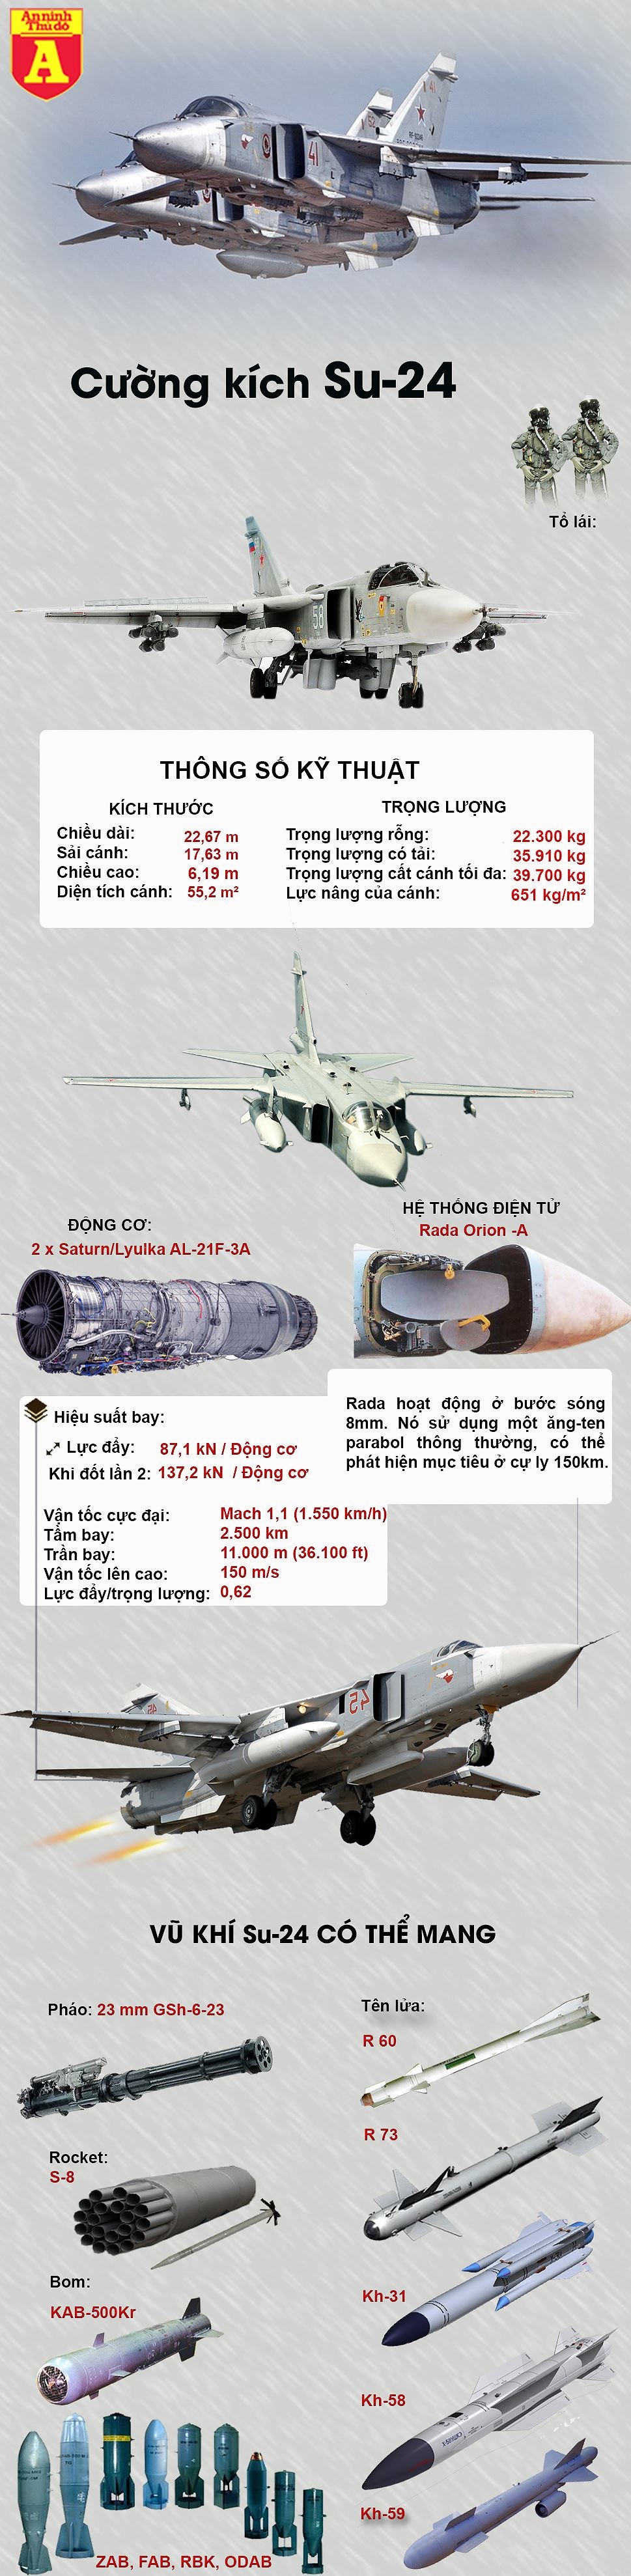 [Infographic] Thêm một chiến đấu cơ Su-24 vừa bị phiến quân bắn cháy tại Syria ảnh 2